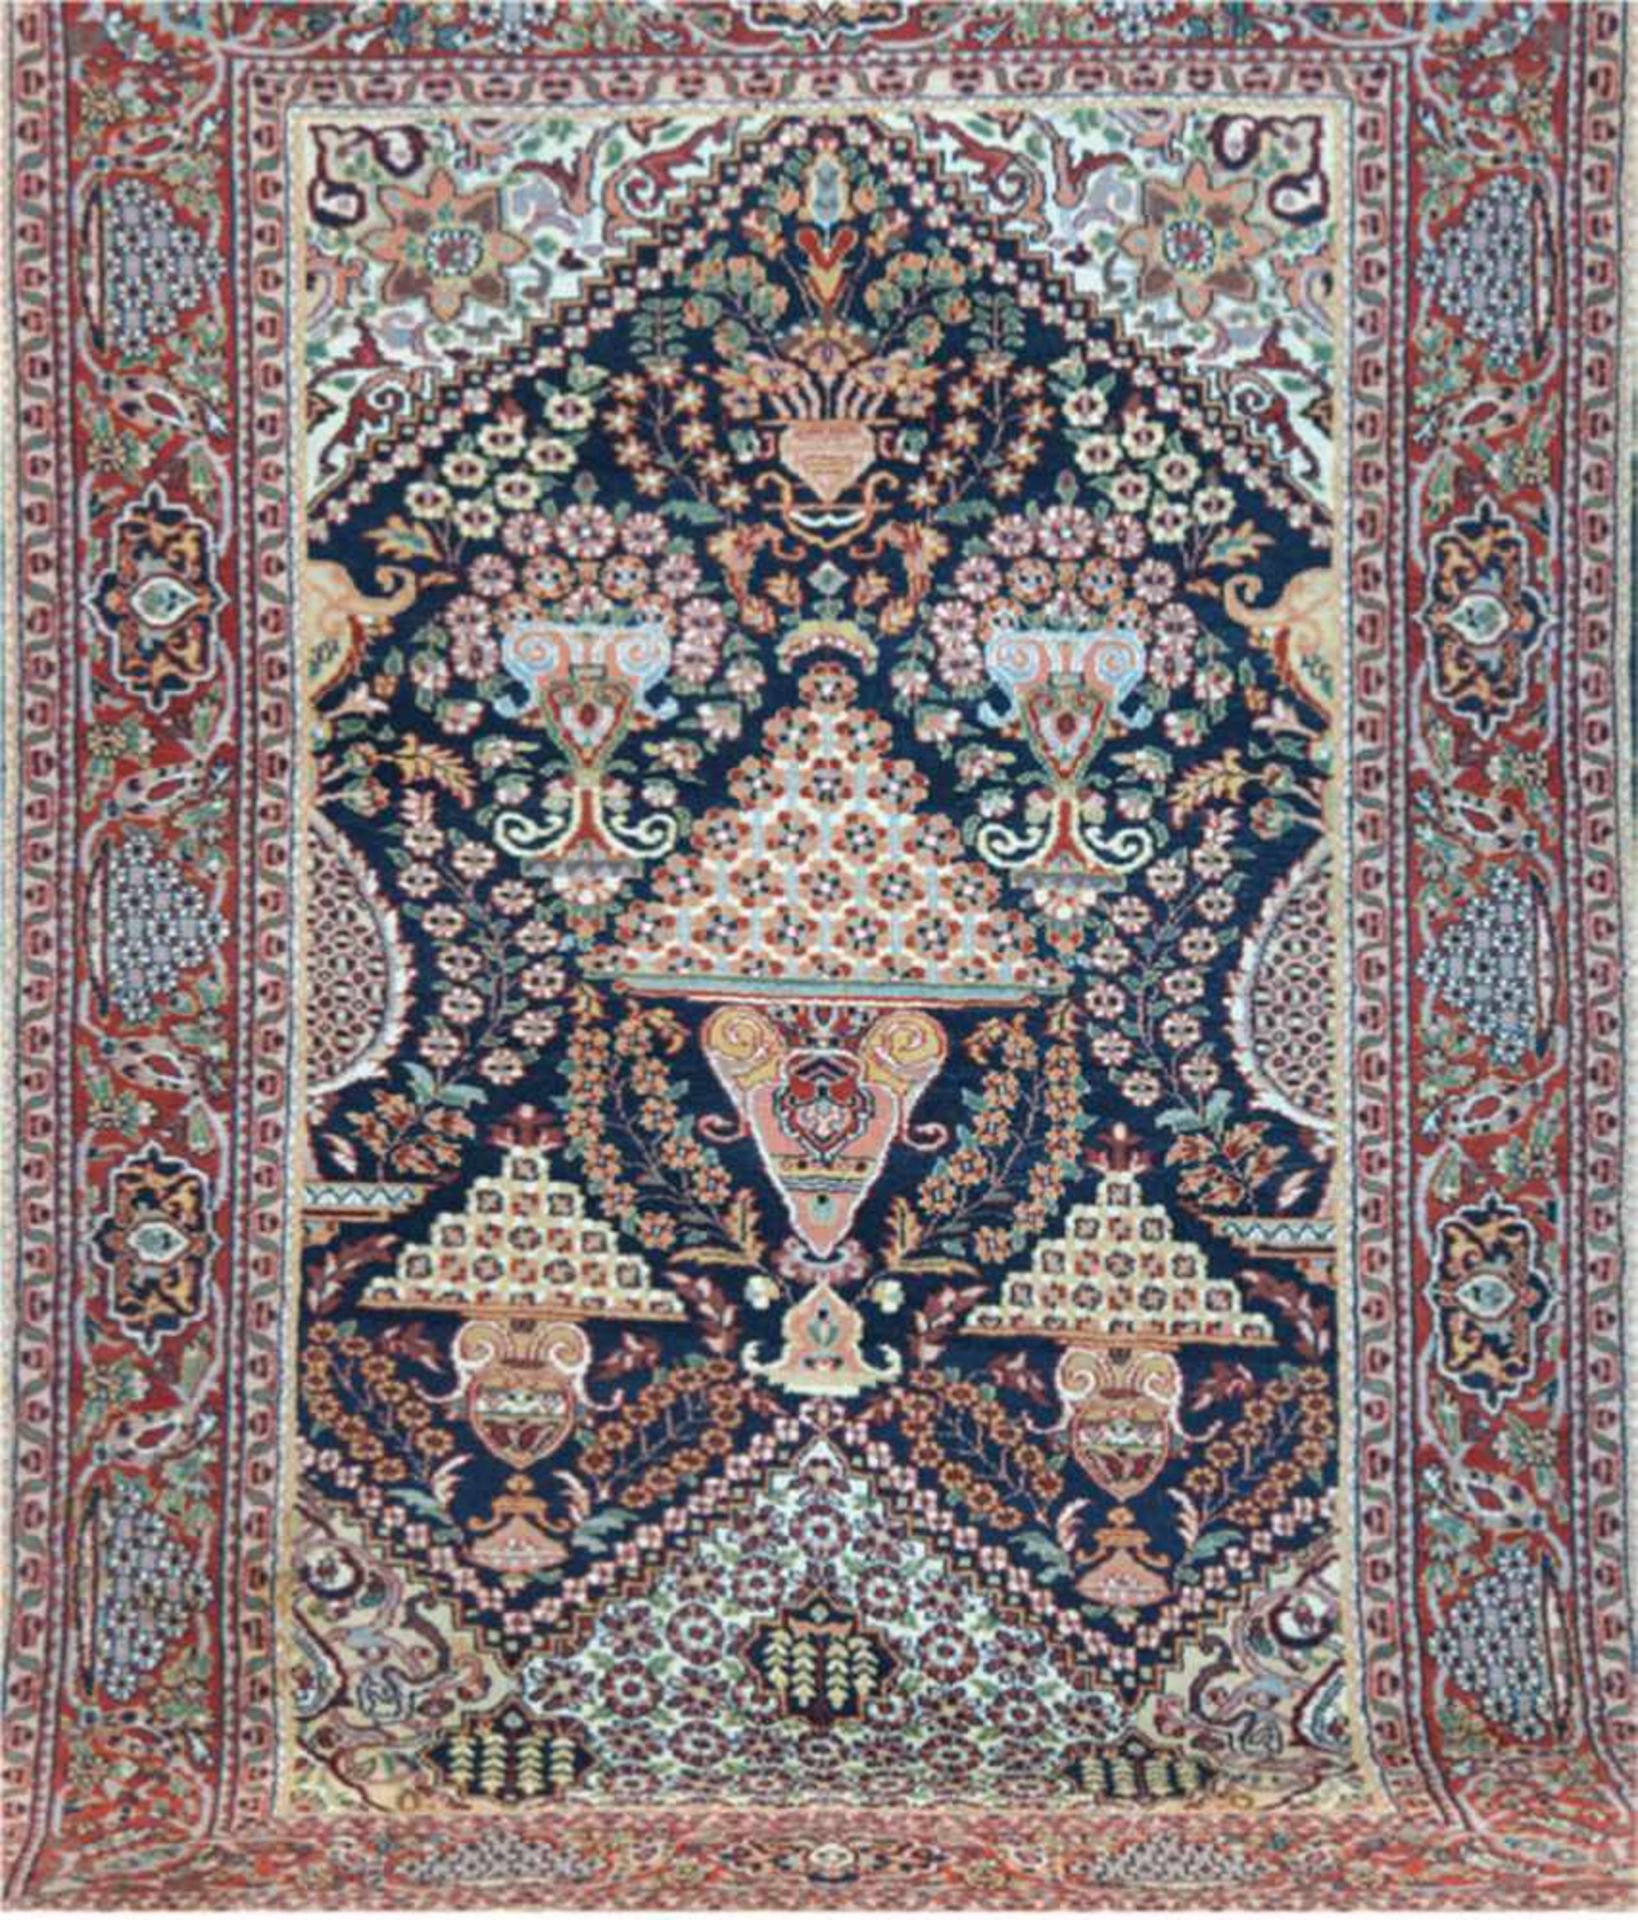 Teppich, rot-, blaugrundig mit Vasen und floralen Motiven, Kanten belaufen, Fransengekürzt, 1 Ecke